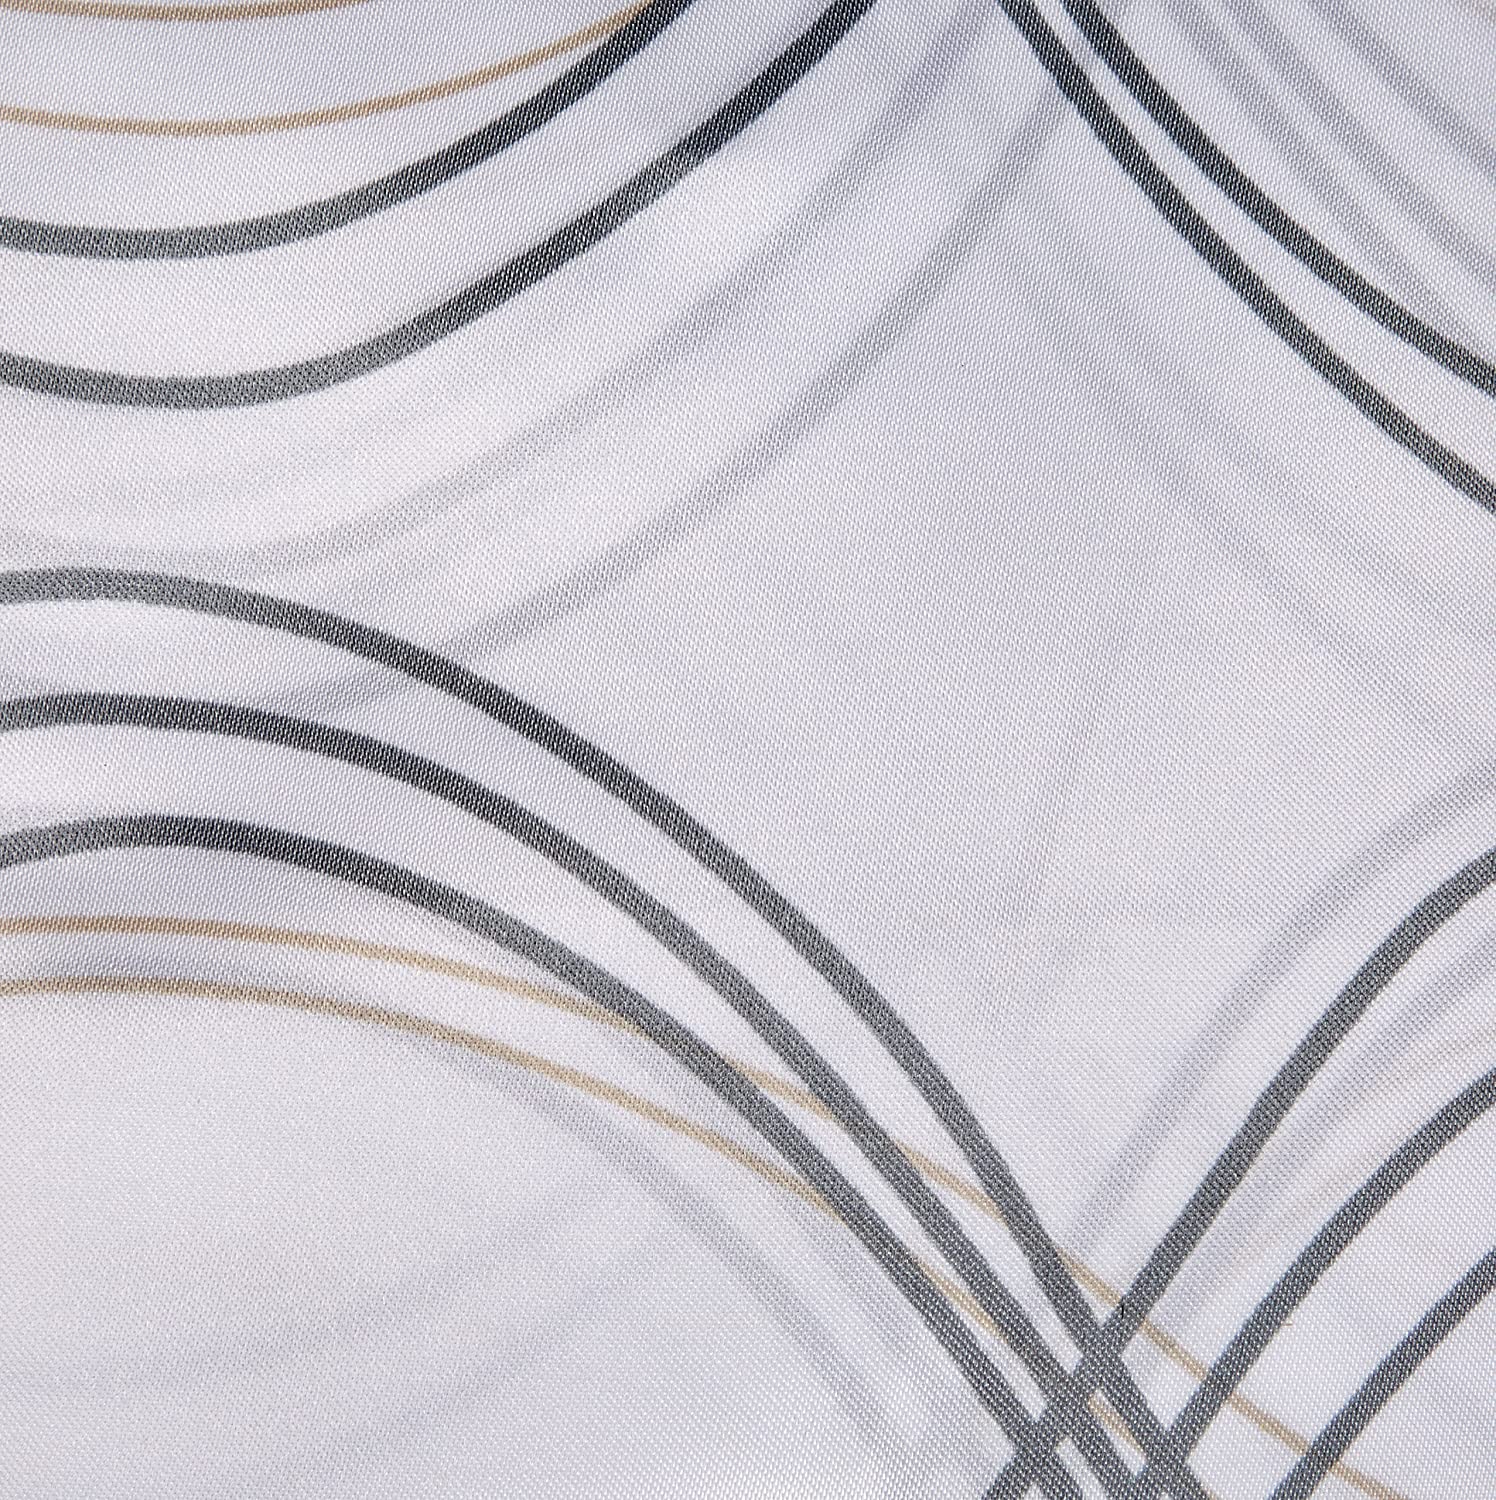 Classy Duschvorhang, 100% Polyester, Weiss, 180x200 cm